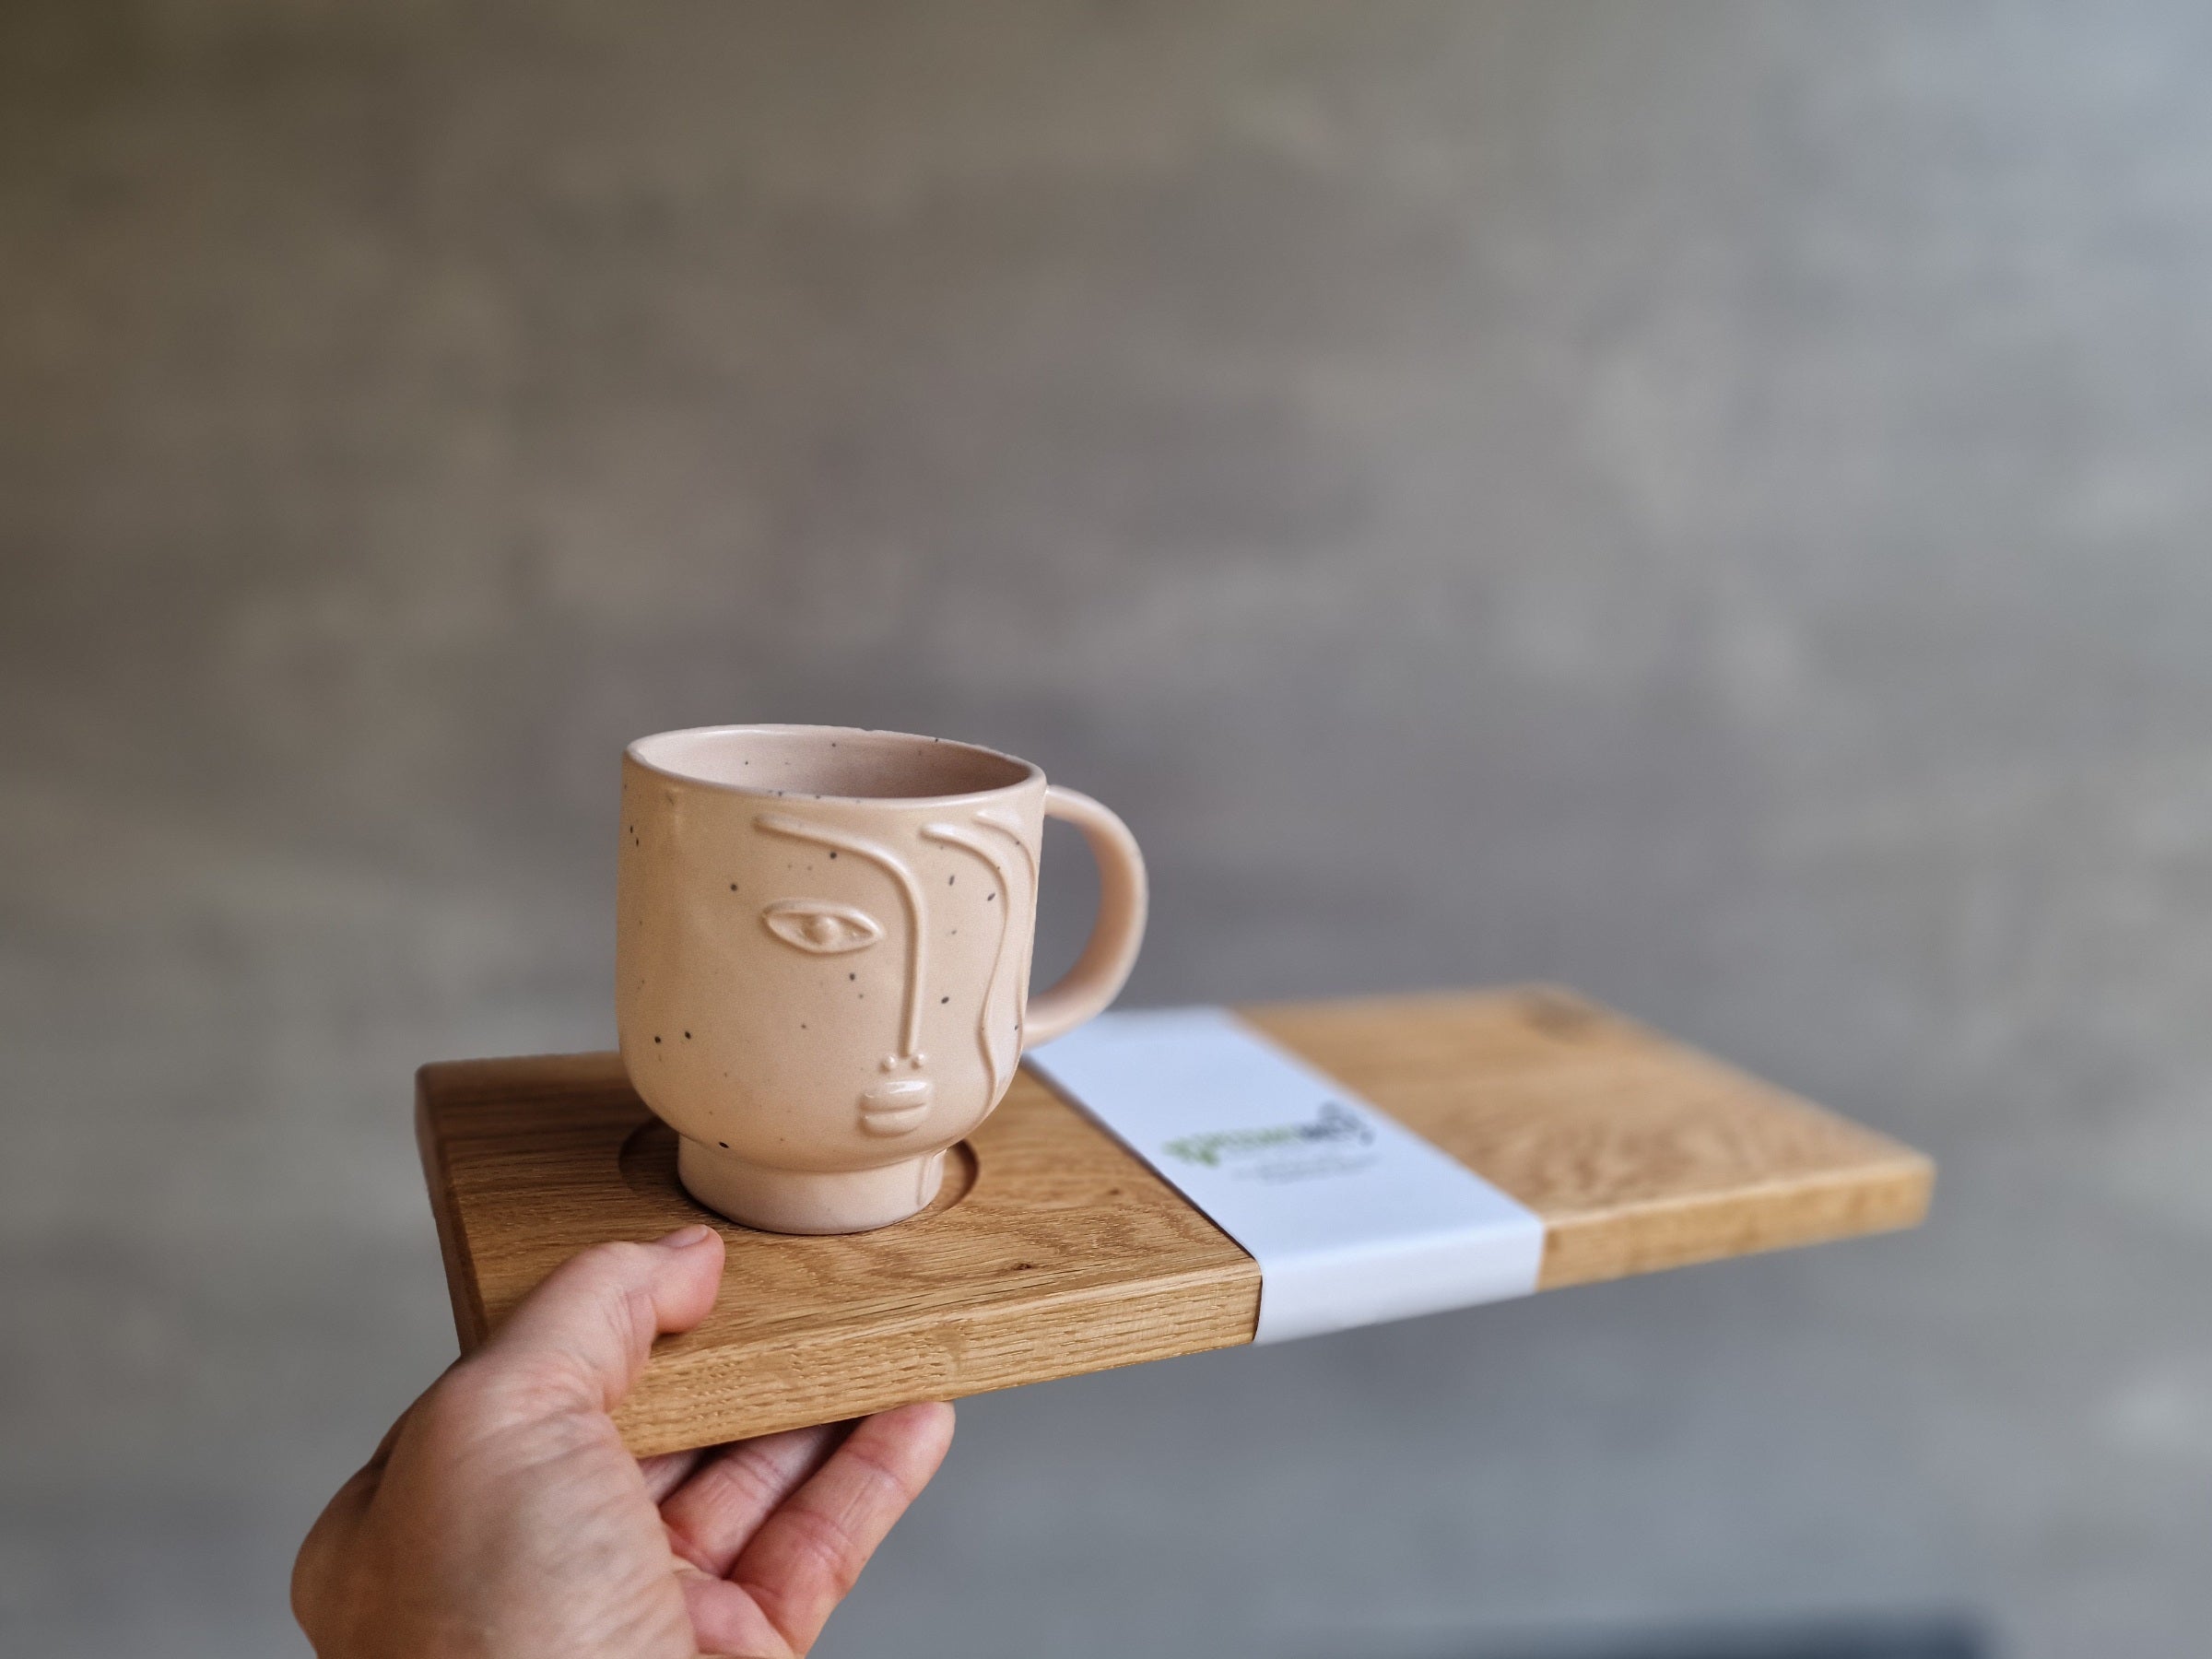 Jemand reicht dir ein schönes Eiche Holz Tablett mit einer großen Tasse Tee.